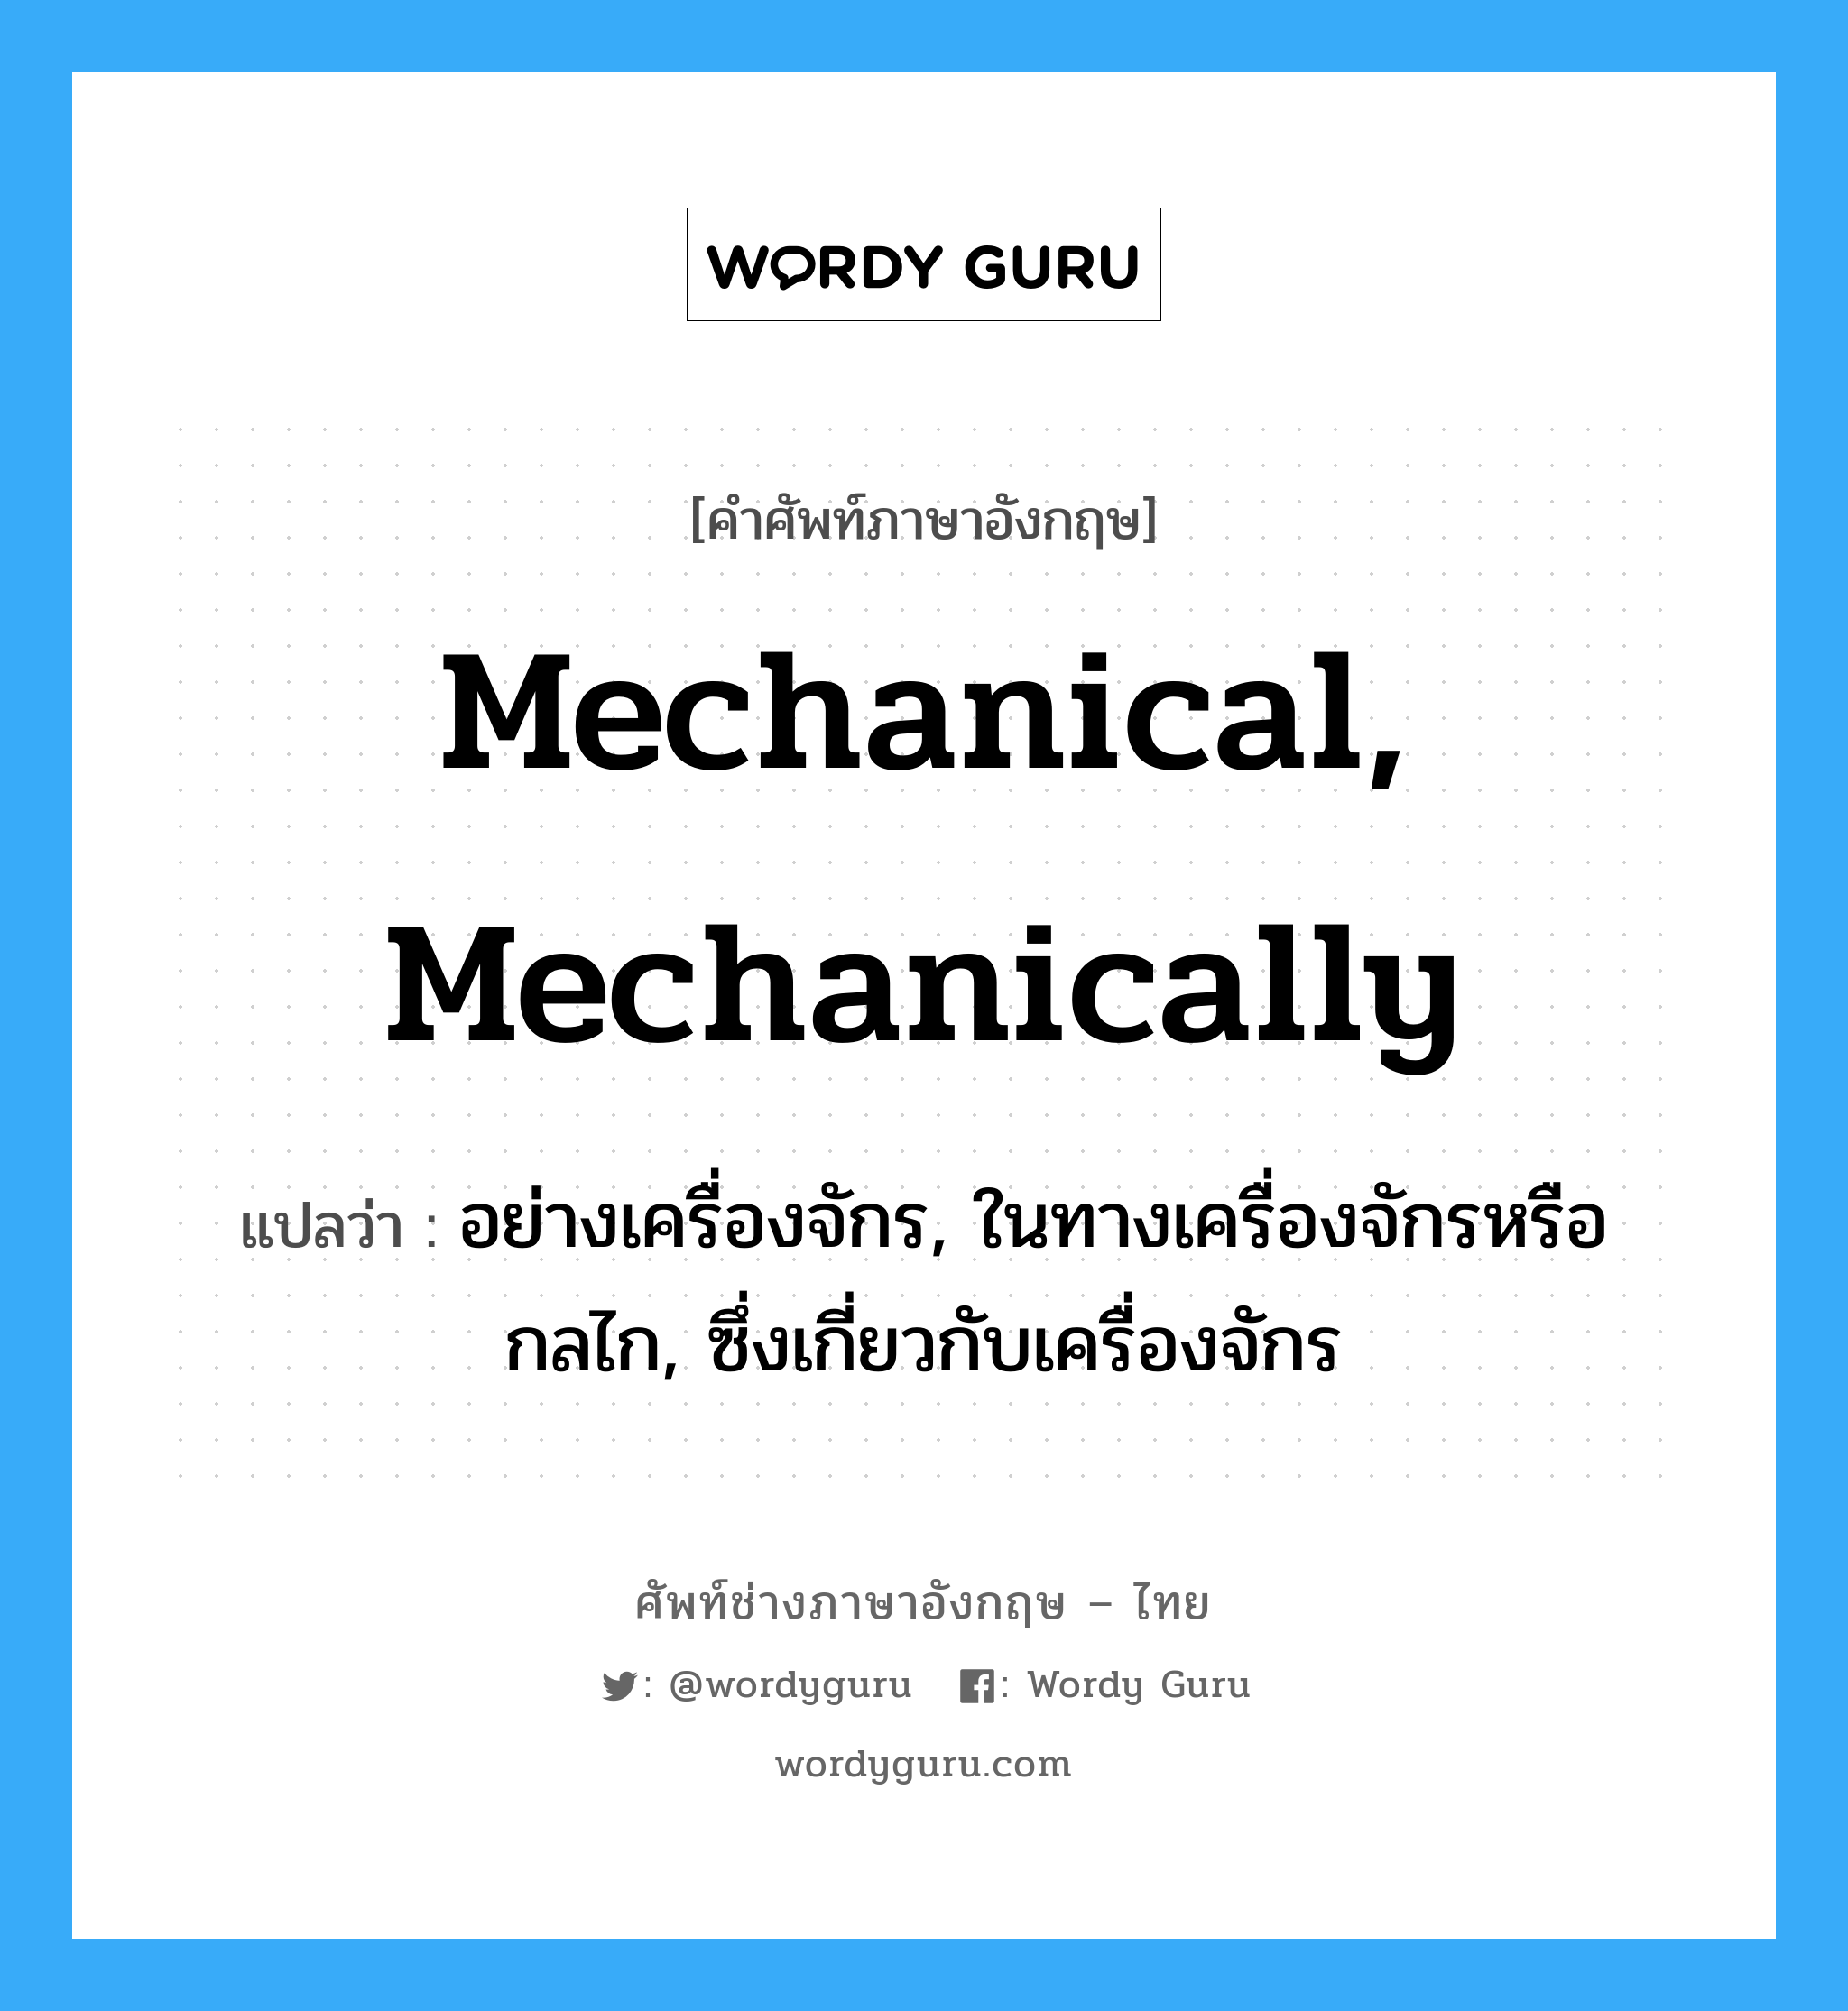 mechanical, mechanically แปลว่า?, คำศัพท์ช่างภาษาอังกฤษ - ไทย mechanical, mechanically คำศัพท์ภาษาอังกฤษ mechanical, mechanically แปลว่า อย่างเครื่องจักร, ในทางเครื่องจักรหรือกลไก, ซึ่งเกี่ยวกับเครื่องจักร